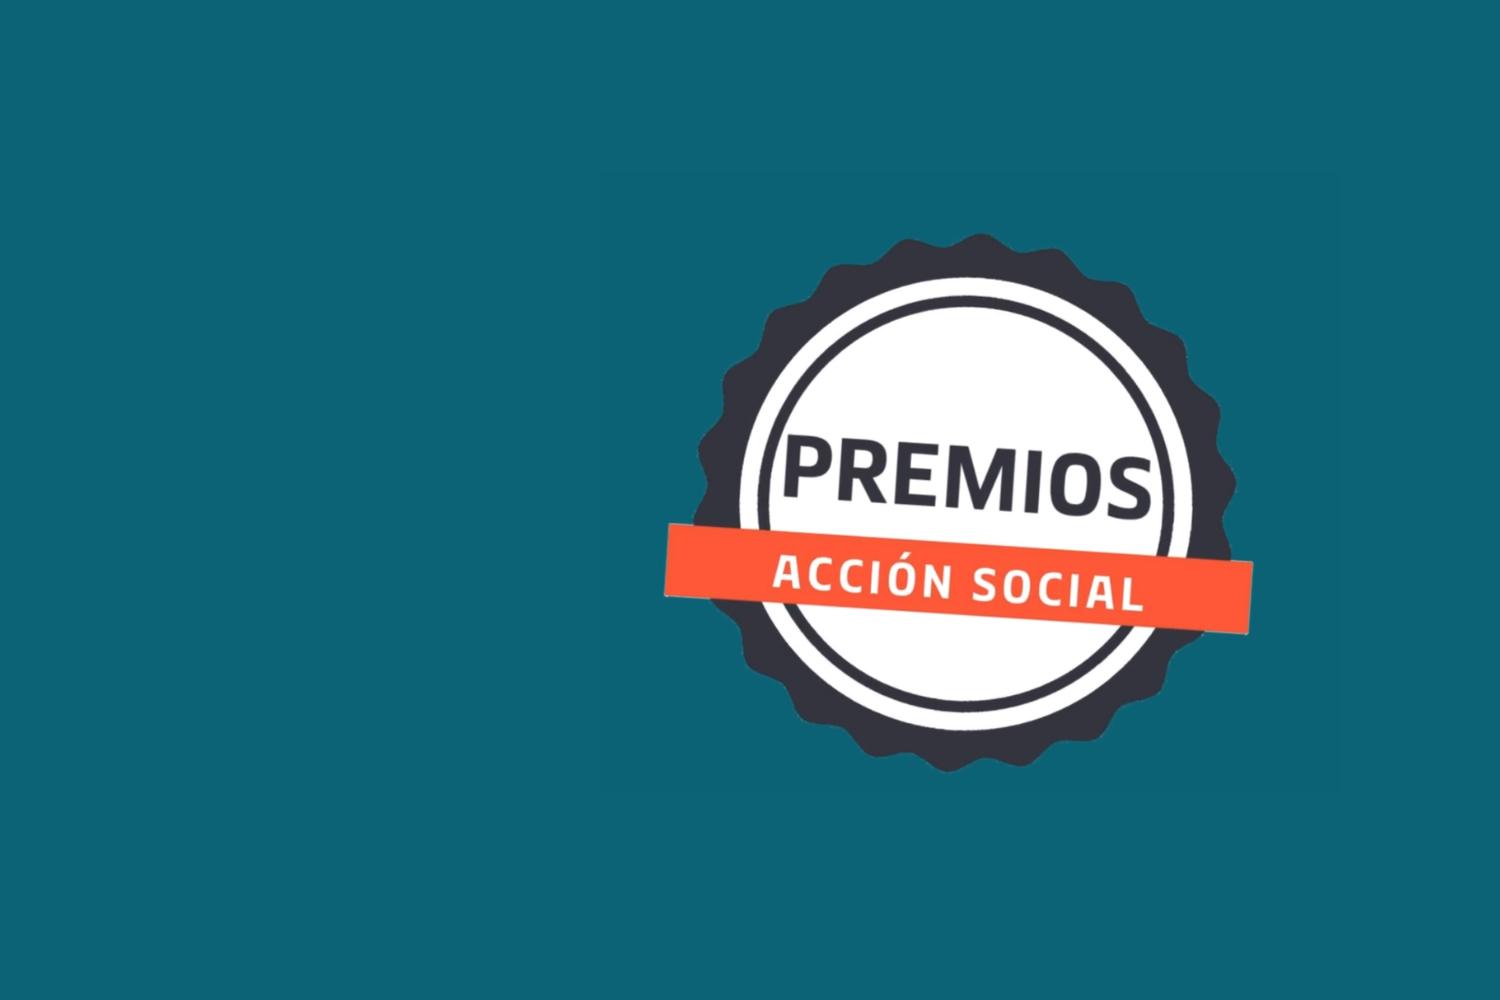 APM Terminals Spanish Gateways ayuda a 7 asociaciones en la tercera edición de sus Premios Acción Social